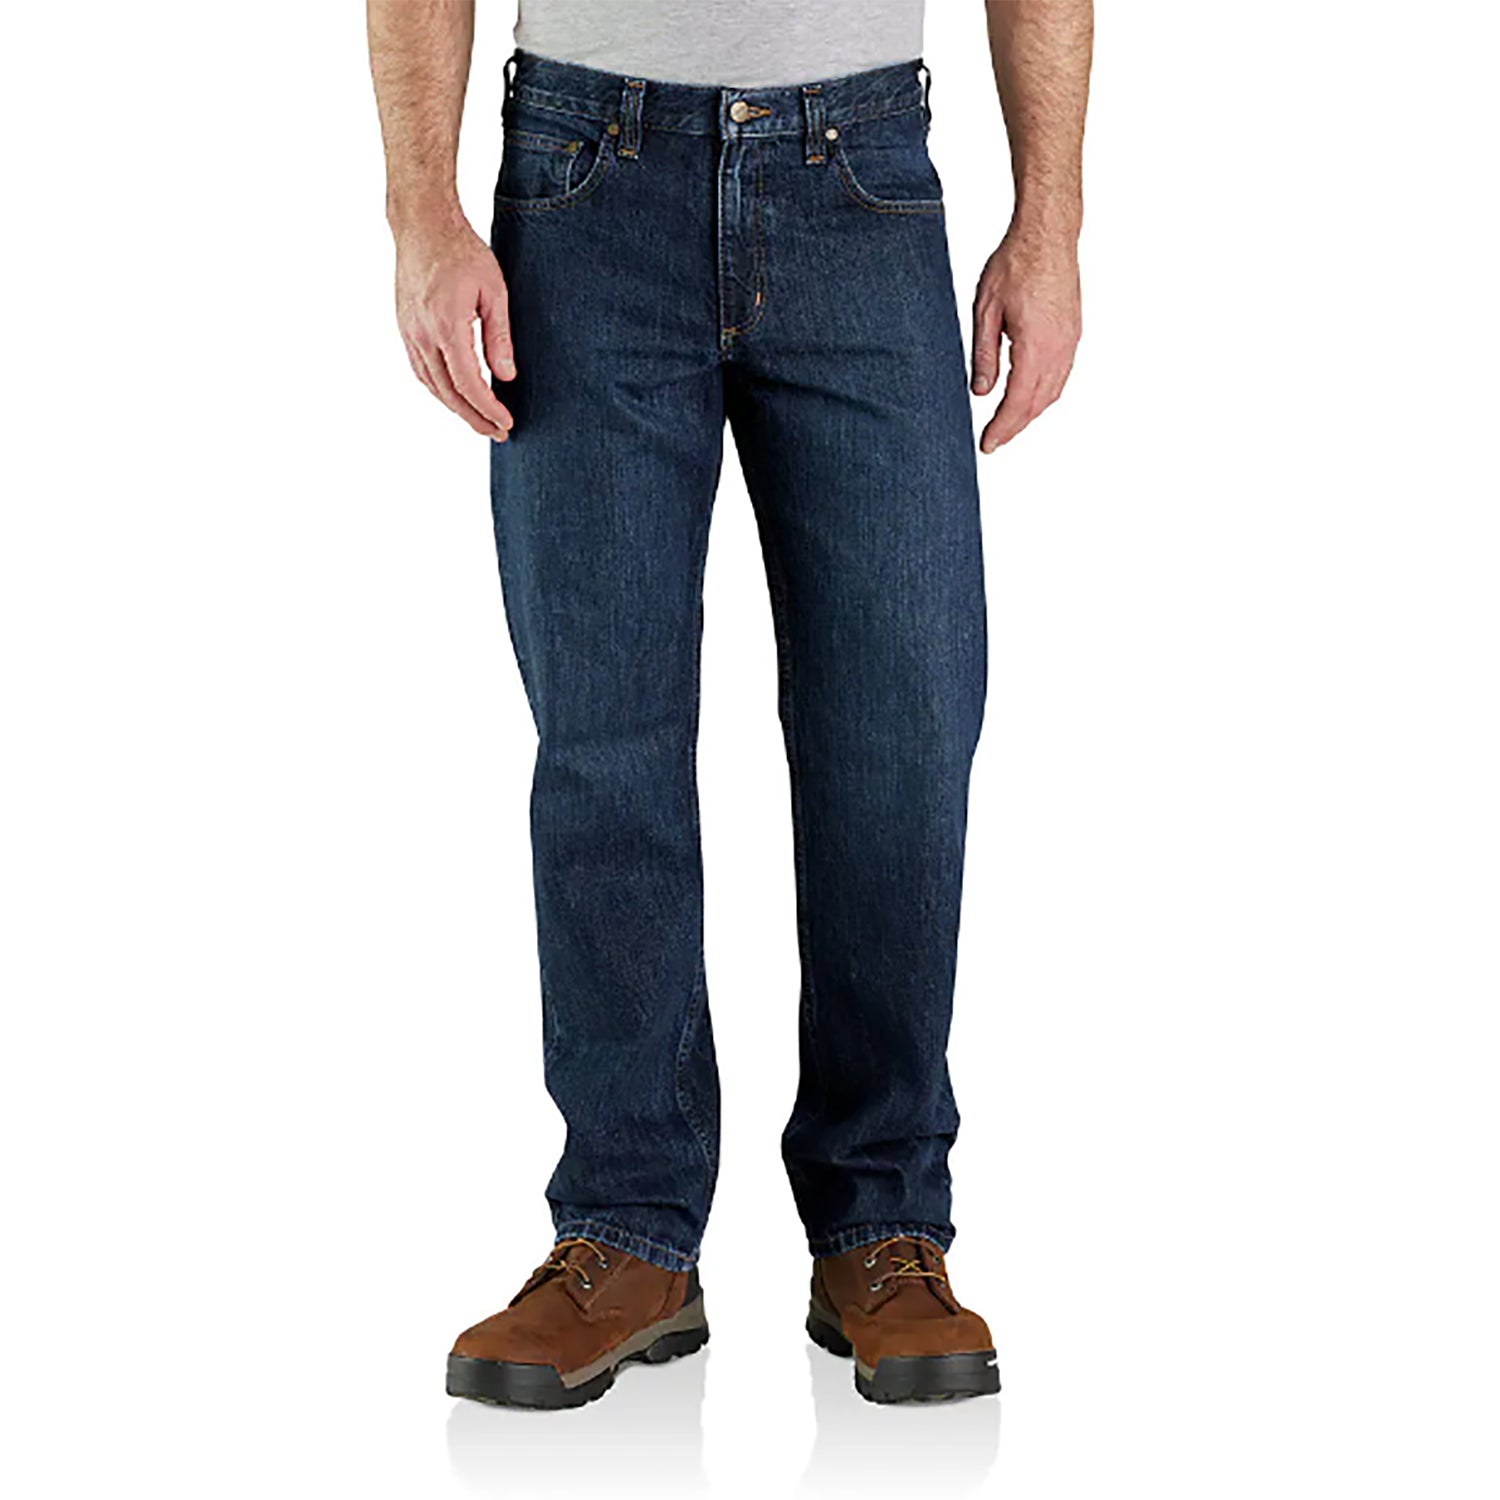 Mens Denim Jeans Pants Premium Cotton Straight Leg Fit CA8929 Black 34x32 